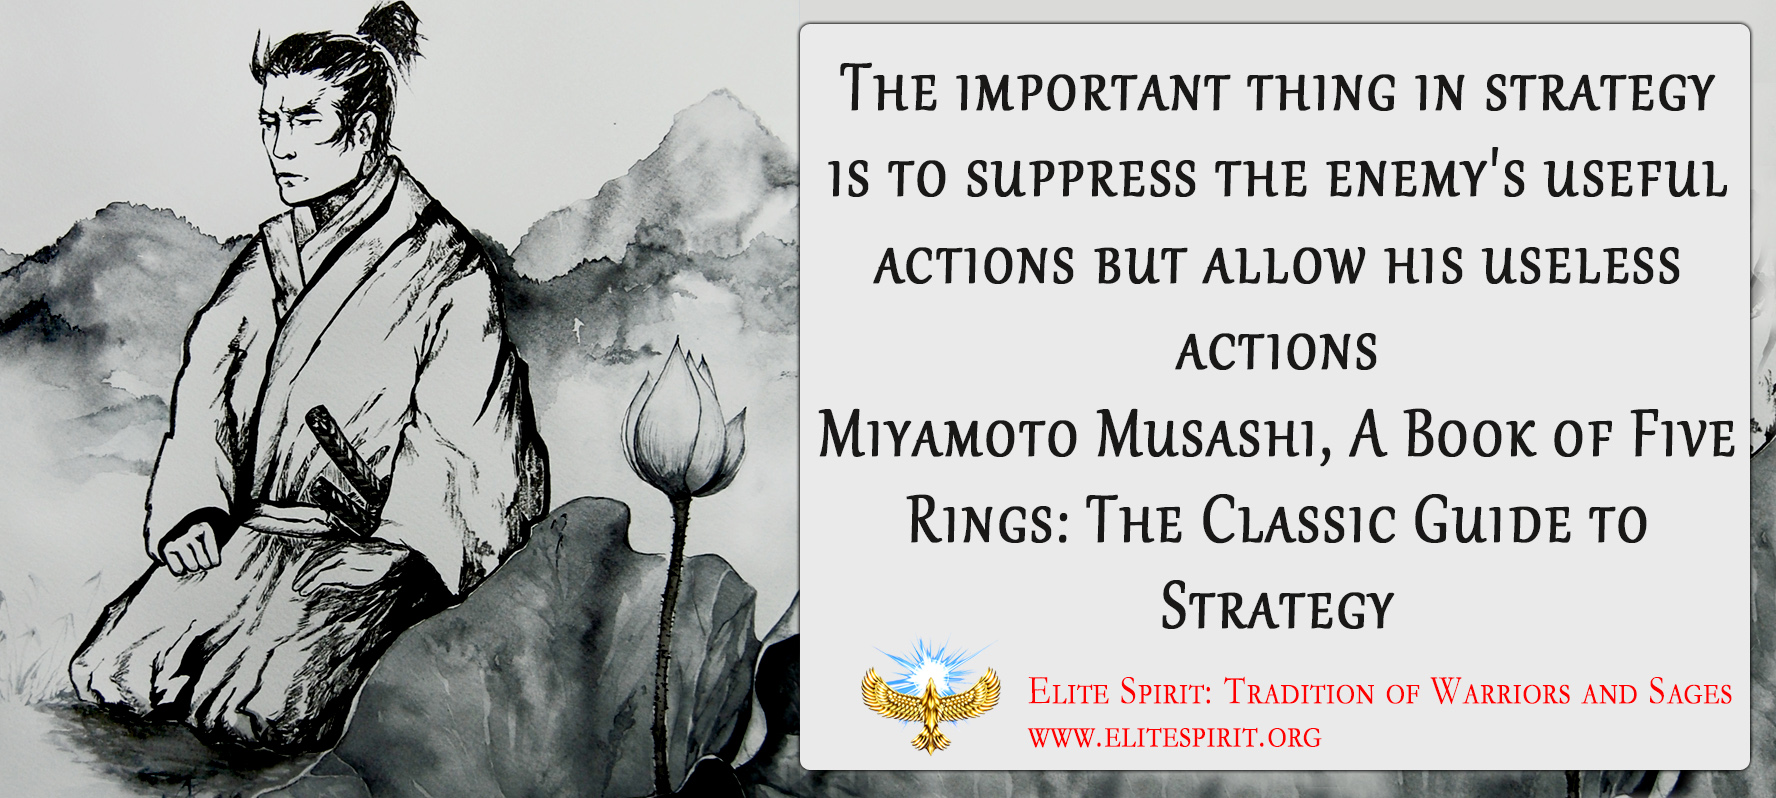 Miyamoto Musashi Quote Saying